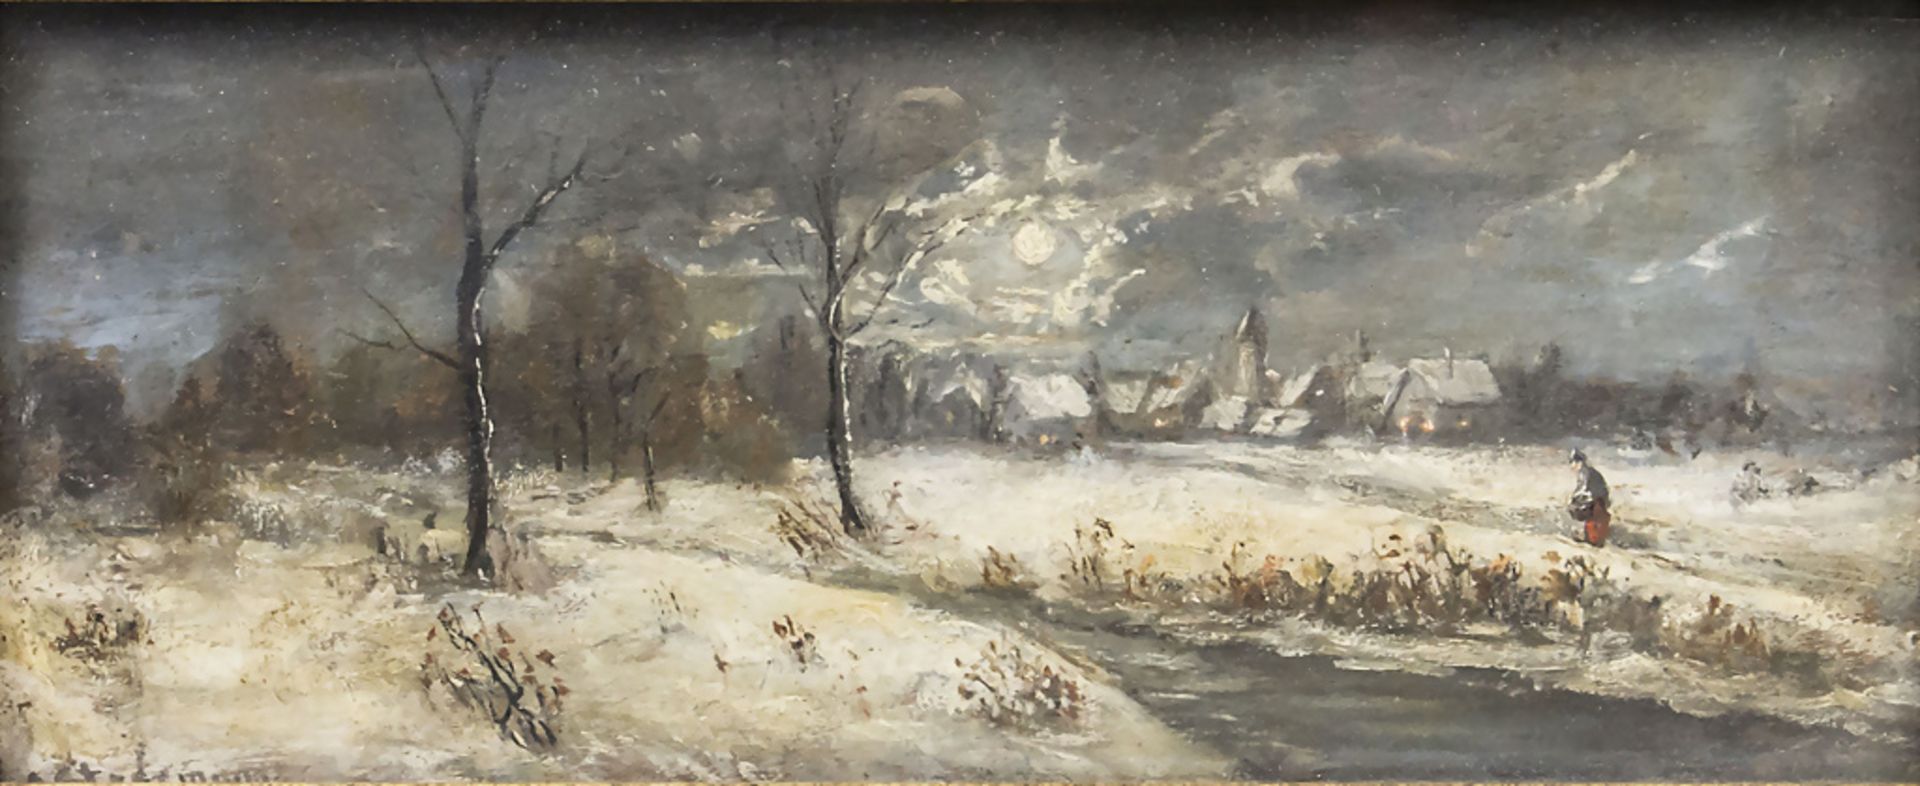 Adolf STADEMANN (1824-1895), 'Winterlandschaft im Mondschein' / 'Winter landscape in moonlight'